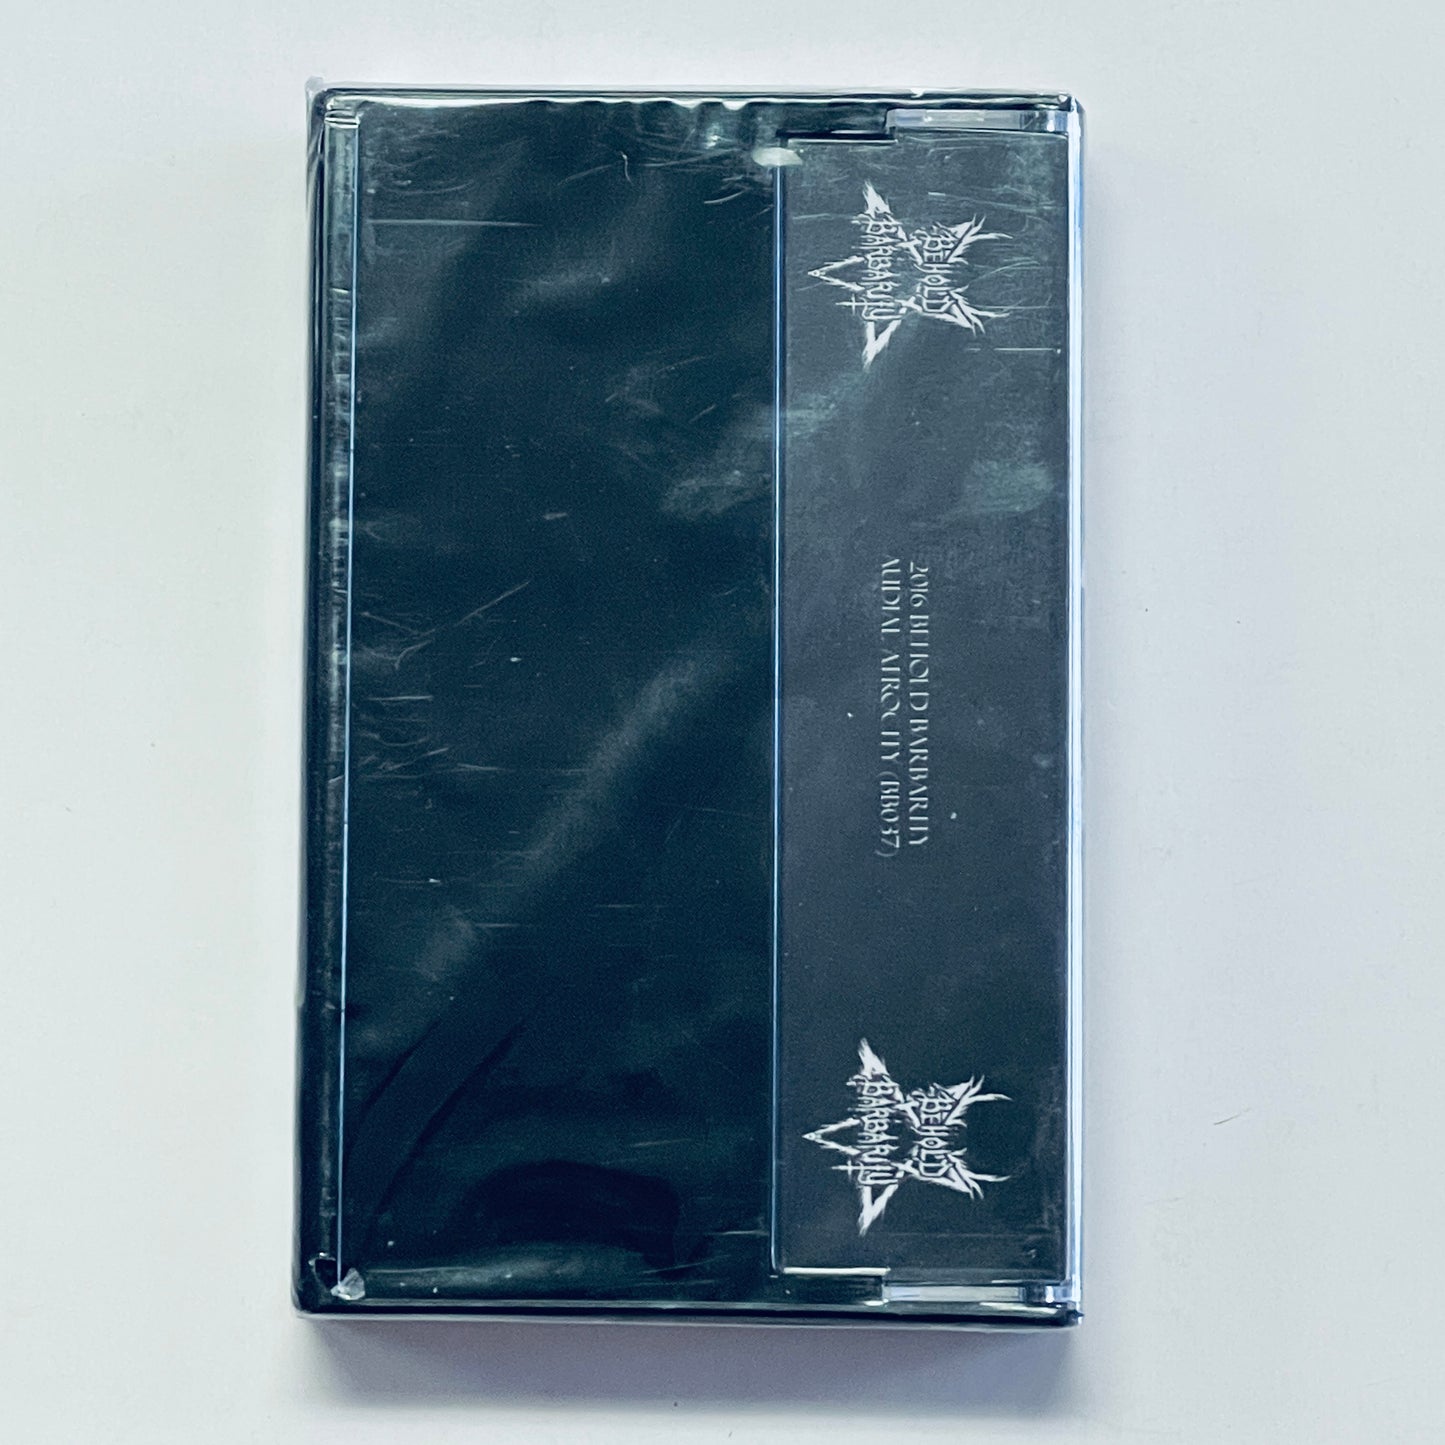 Goathammer - Goathammer cassette tape